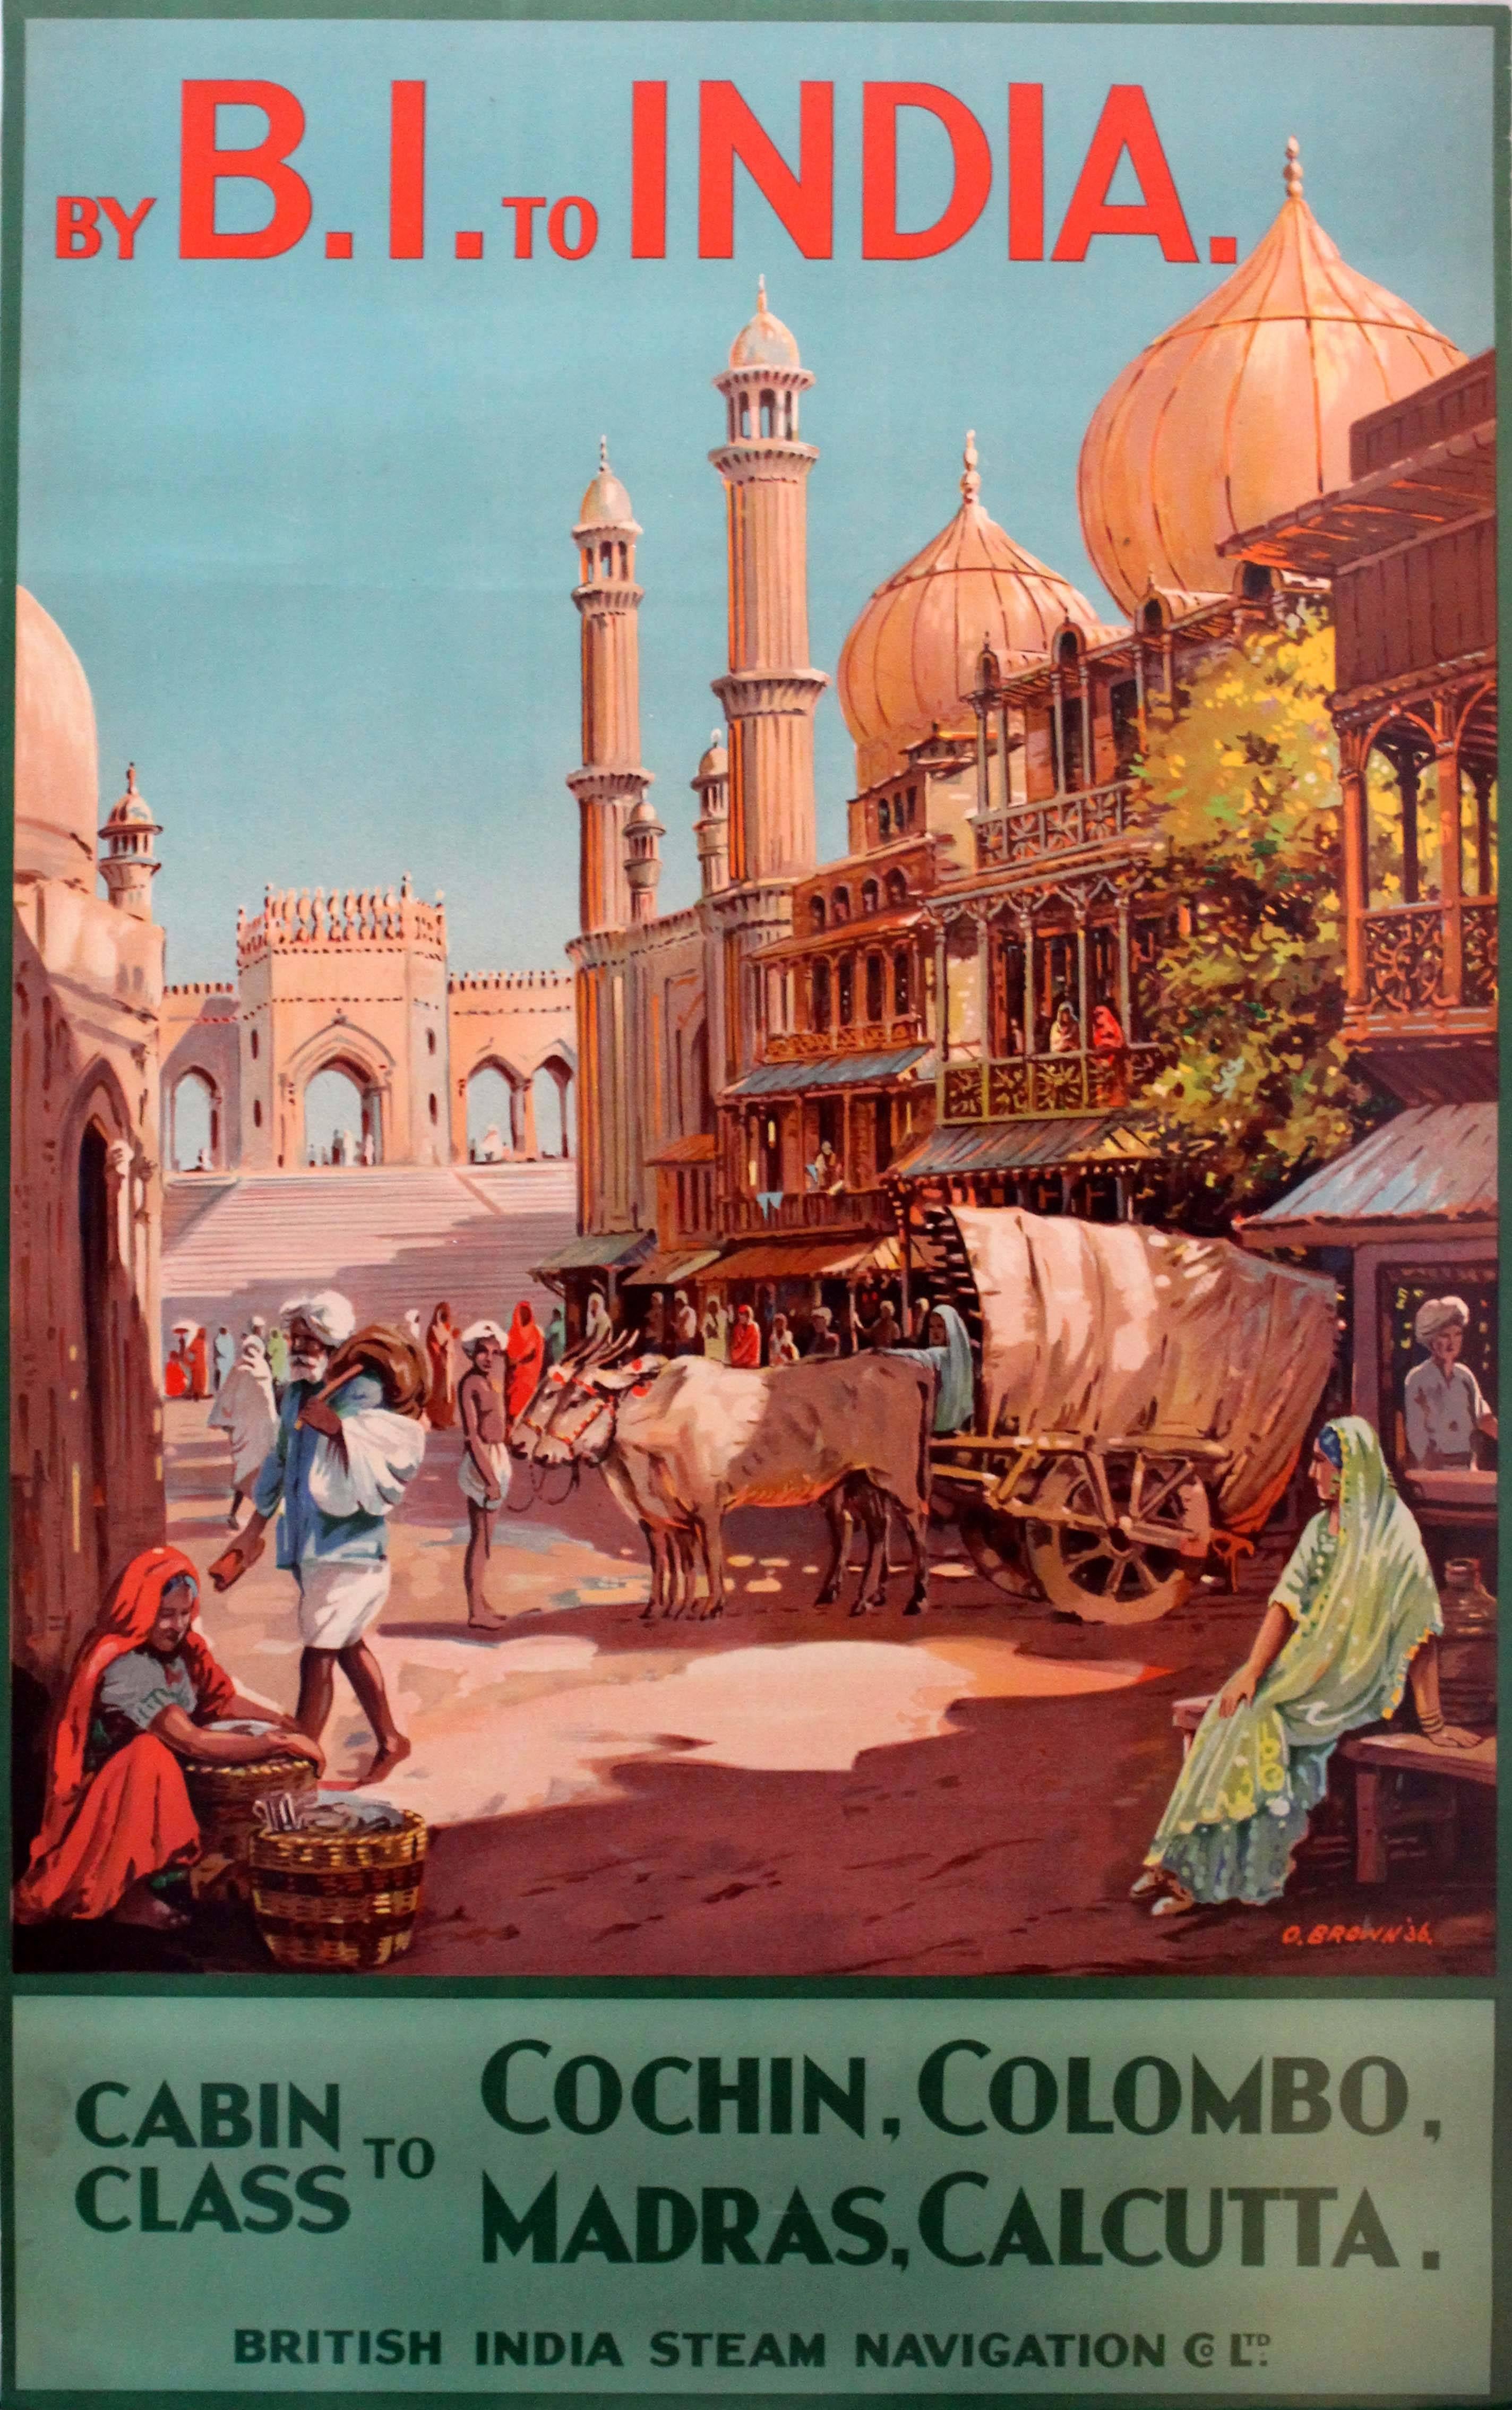 Unknown Print – Originalplakat British India Steam Navigation Company:: 1930er Jahre:: von B.I. To India